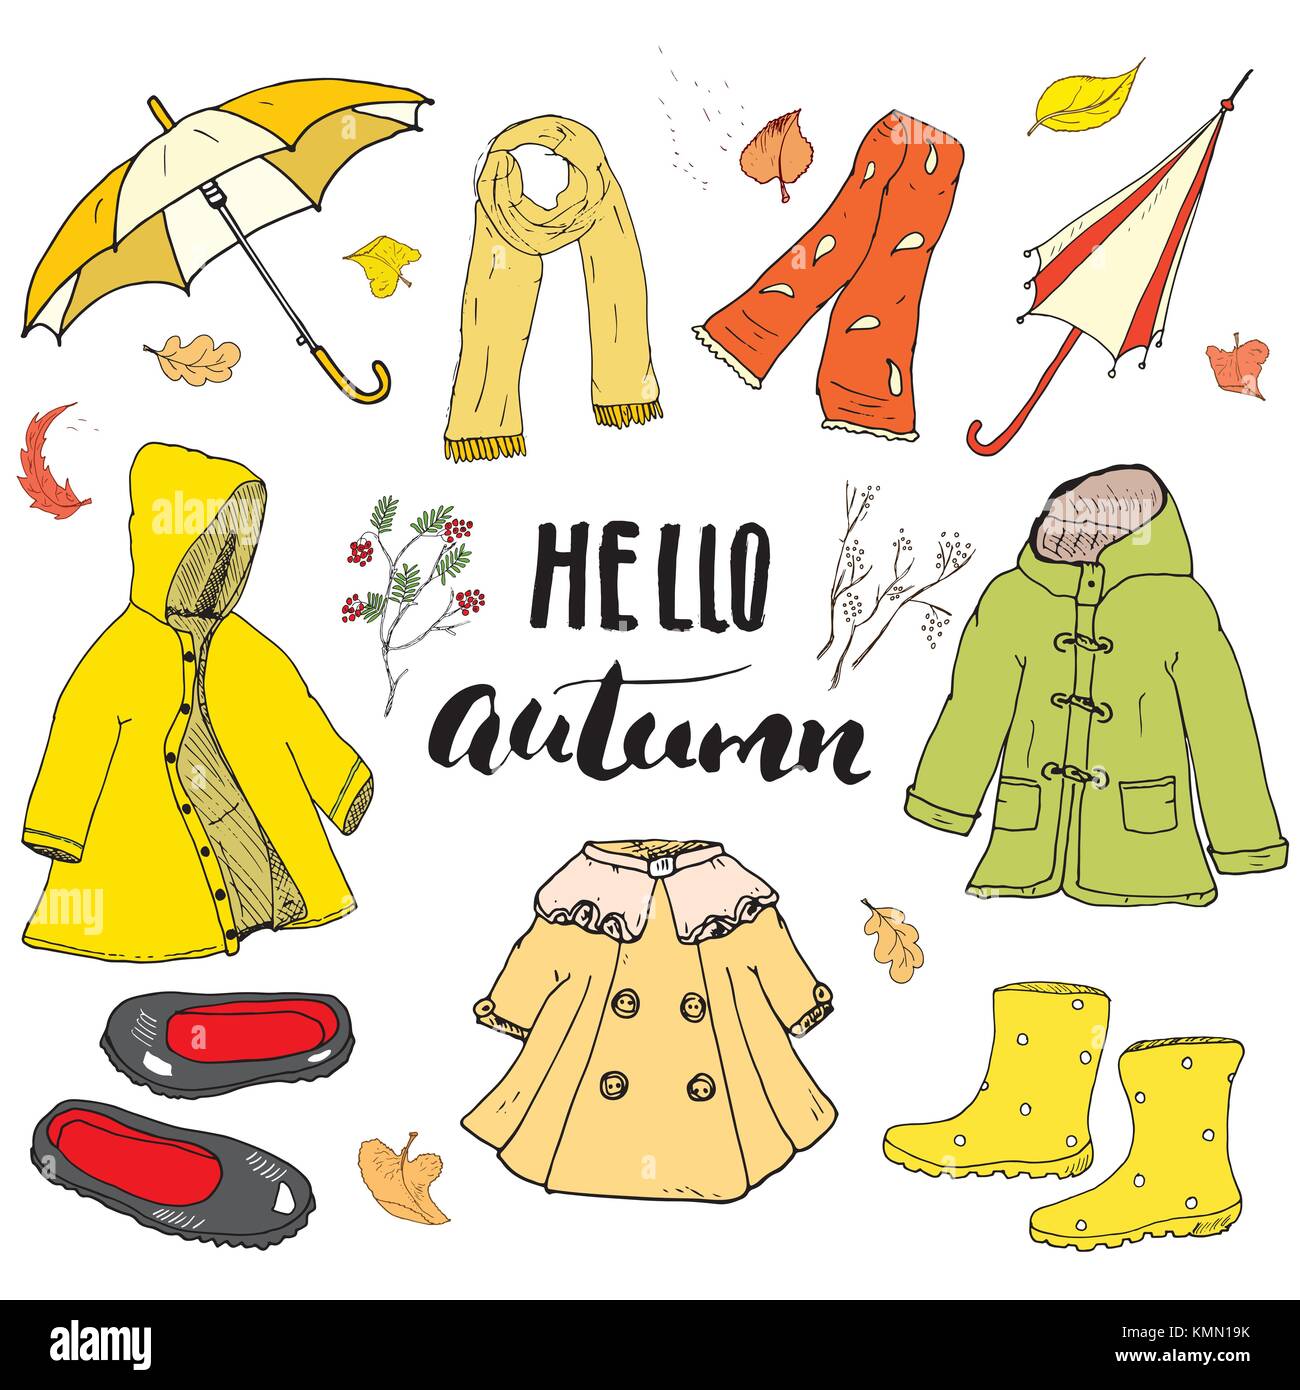 Autumn Clothes Word Mat (teacher made) - Twinkl